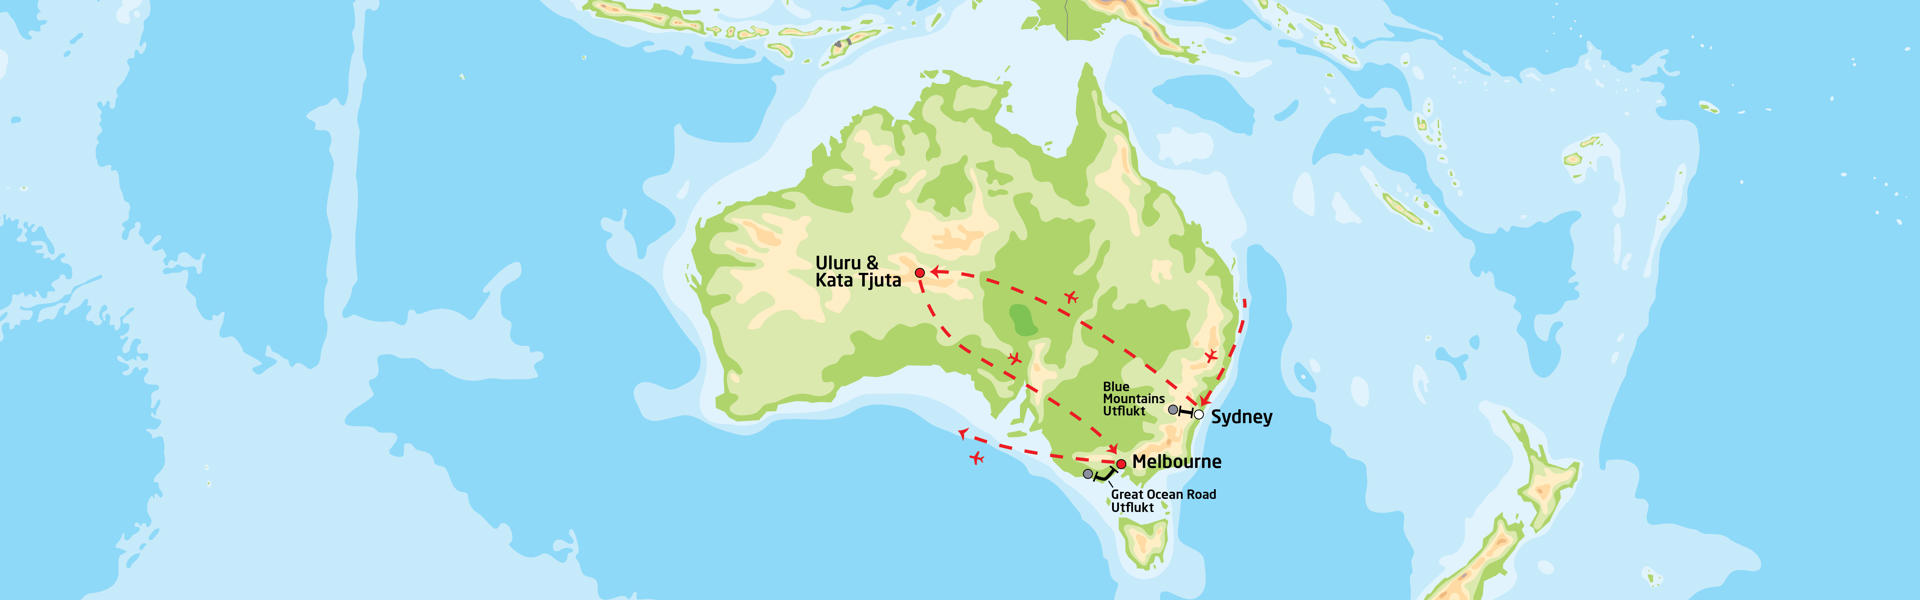 Storby og natur i Australia | Reiserute